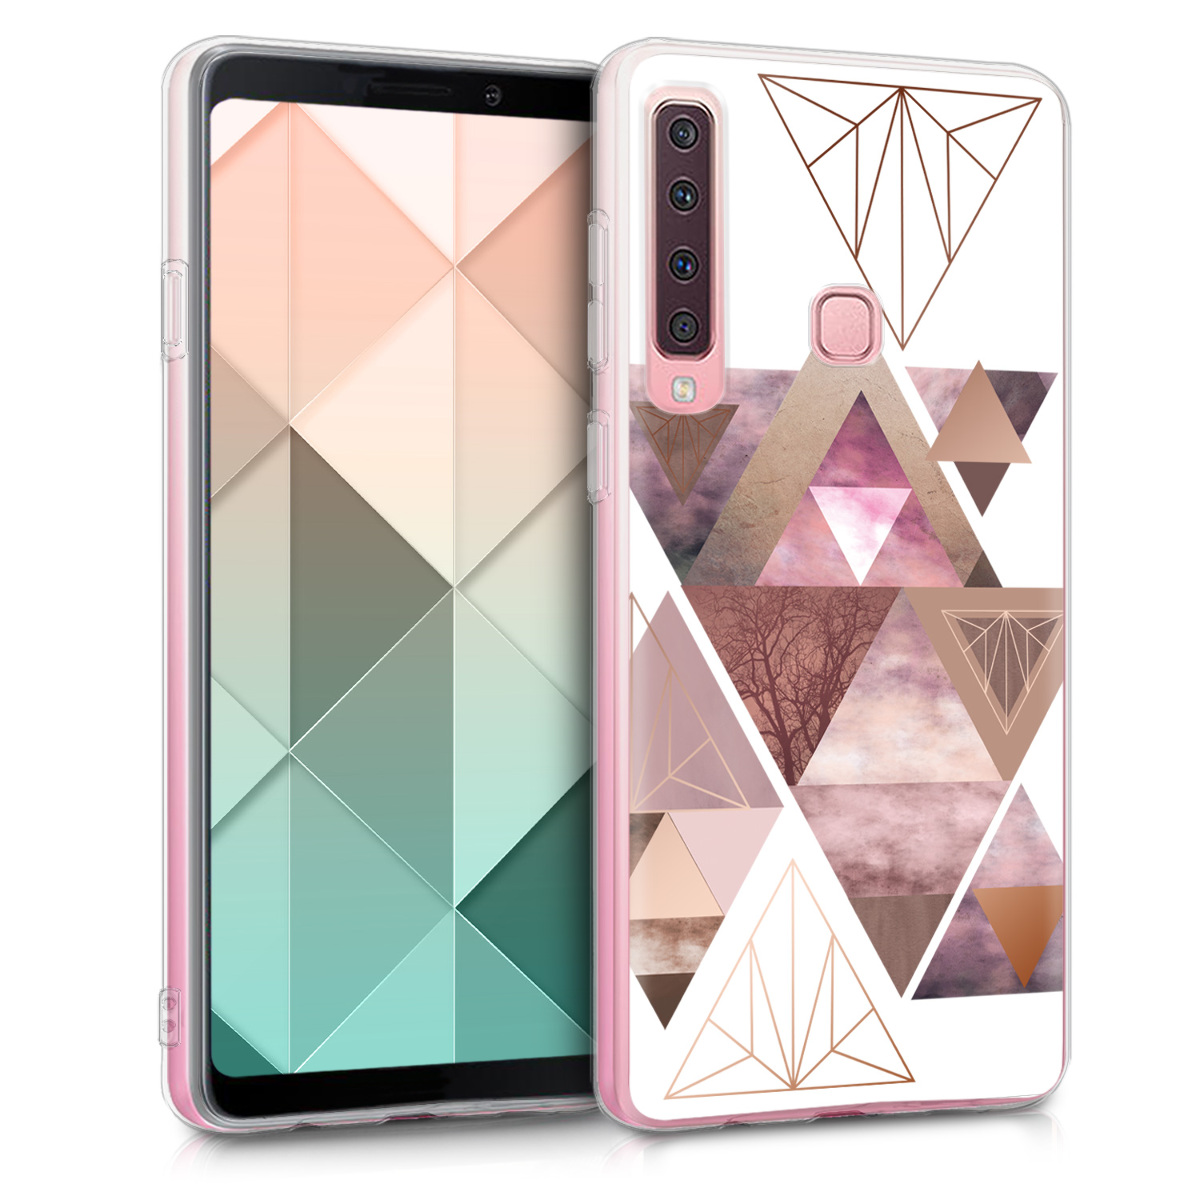 Kvalitní silikonové TPU pouzdro pro Samsung A9 (2018) - Patchwork trojúhelníky světle růžové / starorůžové rosegold / bílé